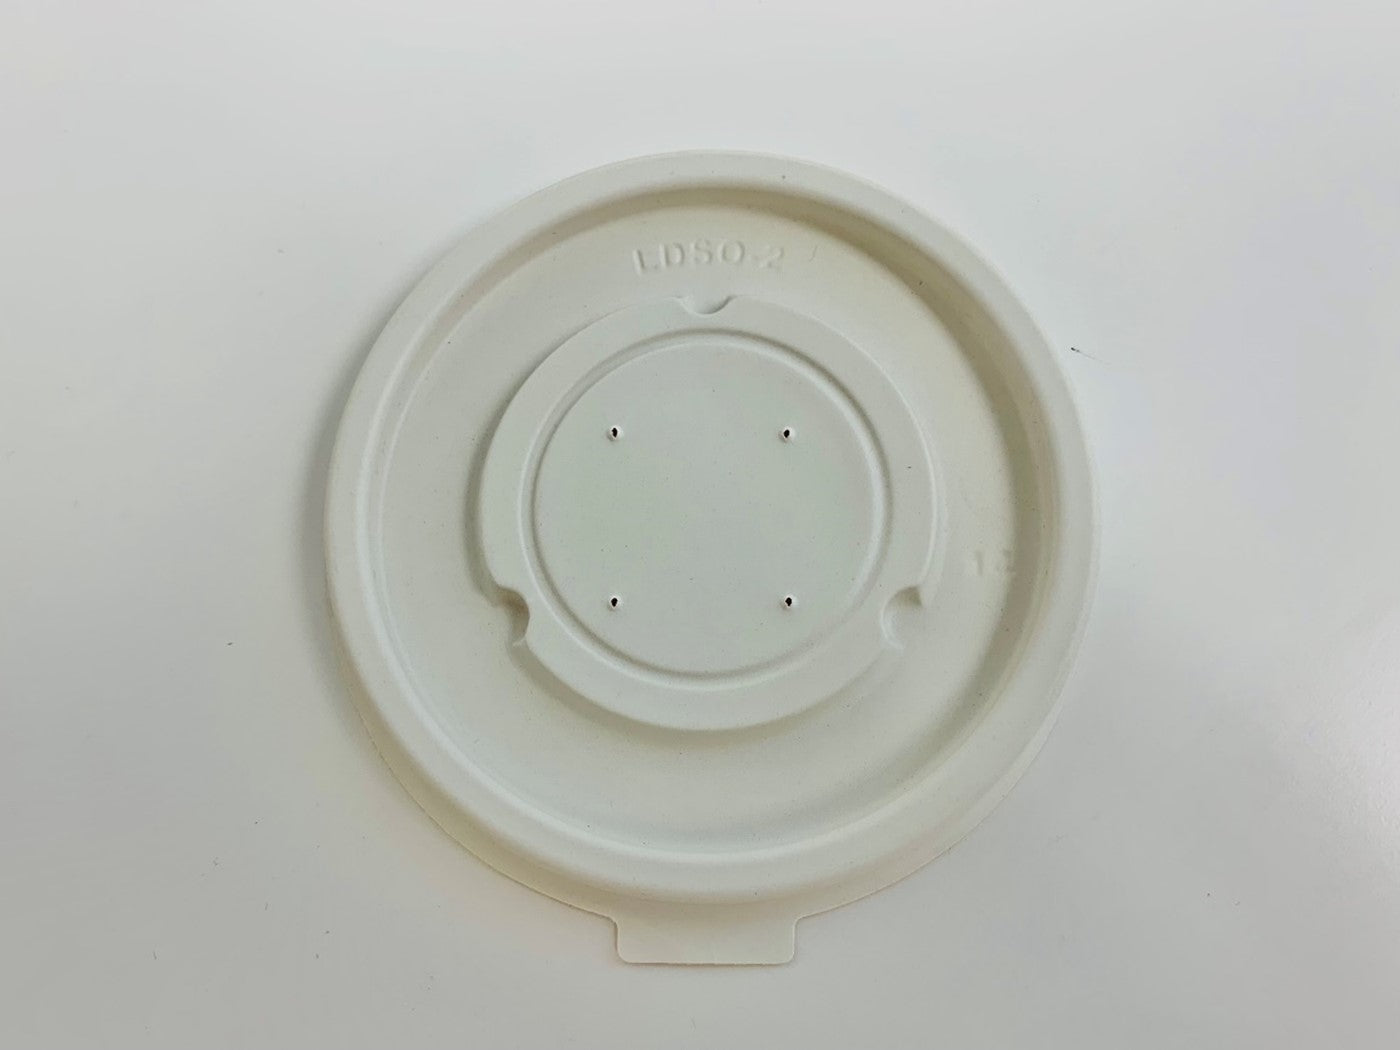 LDSO-HT2(PP) - High Temp Disposable Plastic Soup Bowl Lid